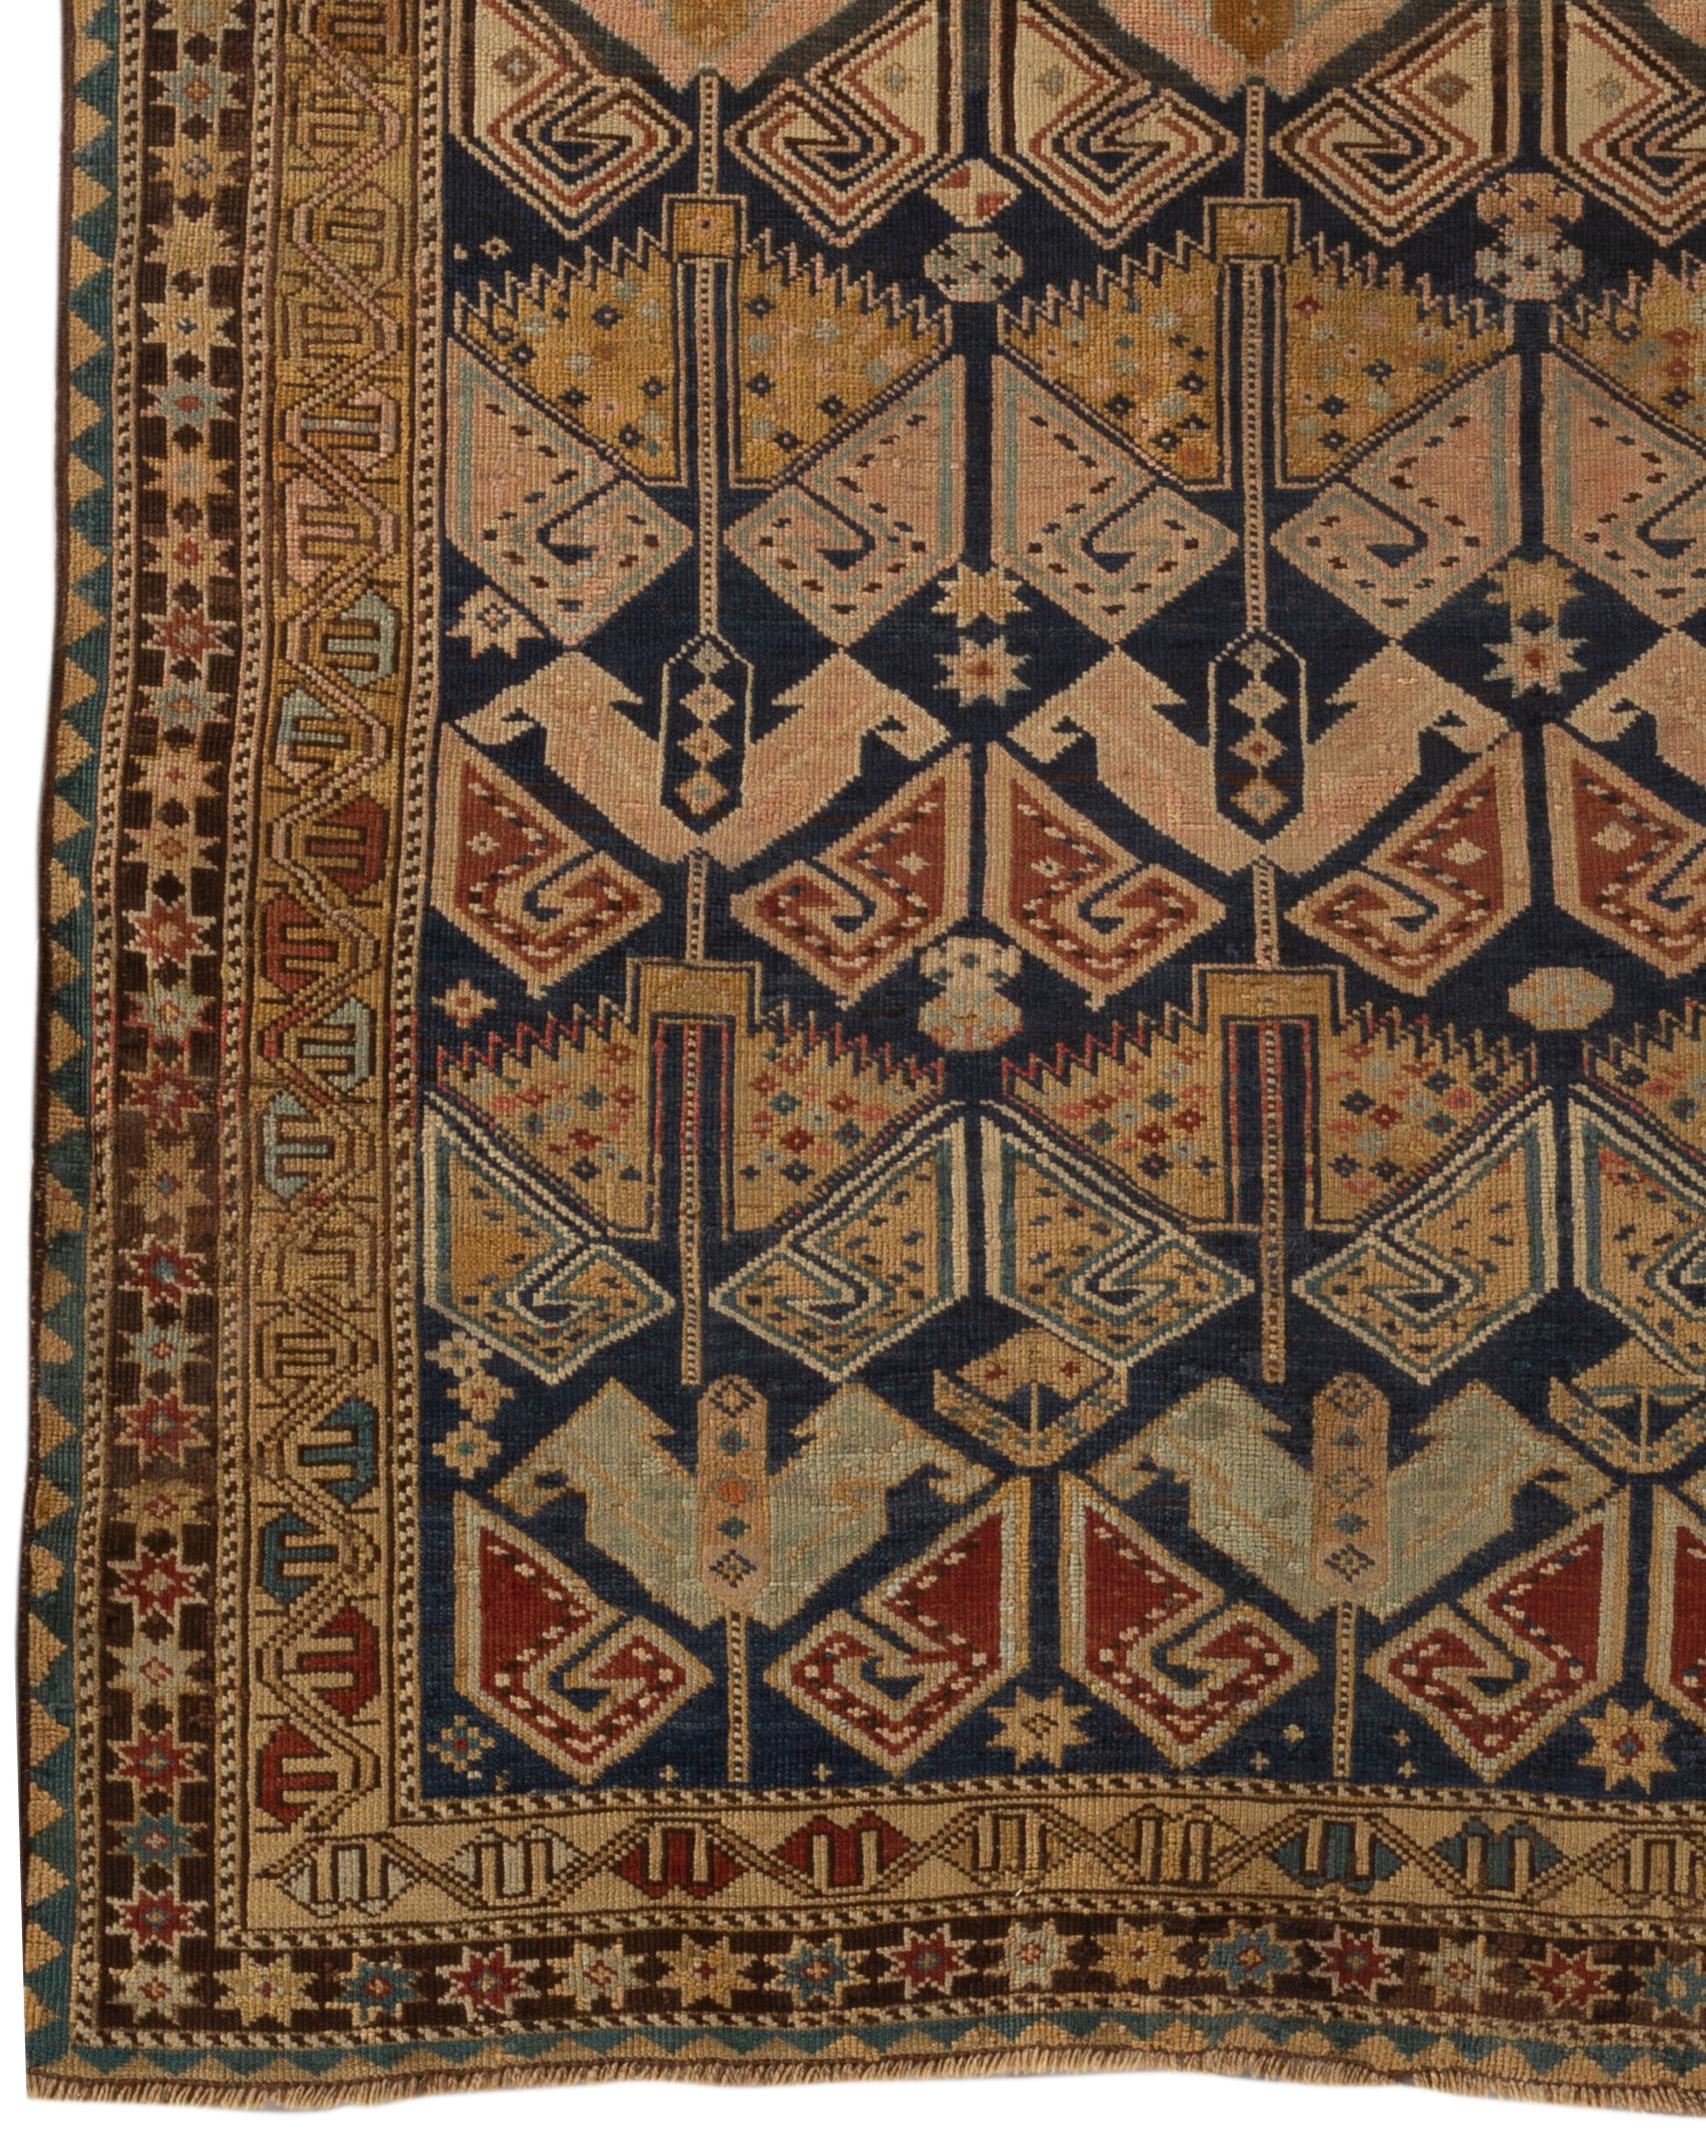 Antiker kaukasischer Schirwan-Teppich, um 1880. Diese Arten von antiken kaukasischen Teppichen wurden im östlichen Teil der Region gewebt, meist entlang der Westküste des Kaspischen Meeres, und zeigen im Design den ethnischen Stil, der mit